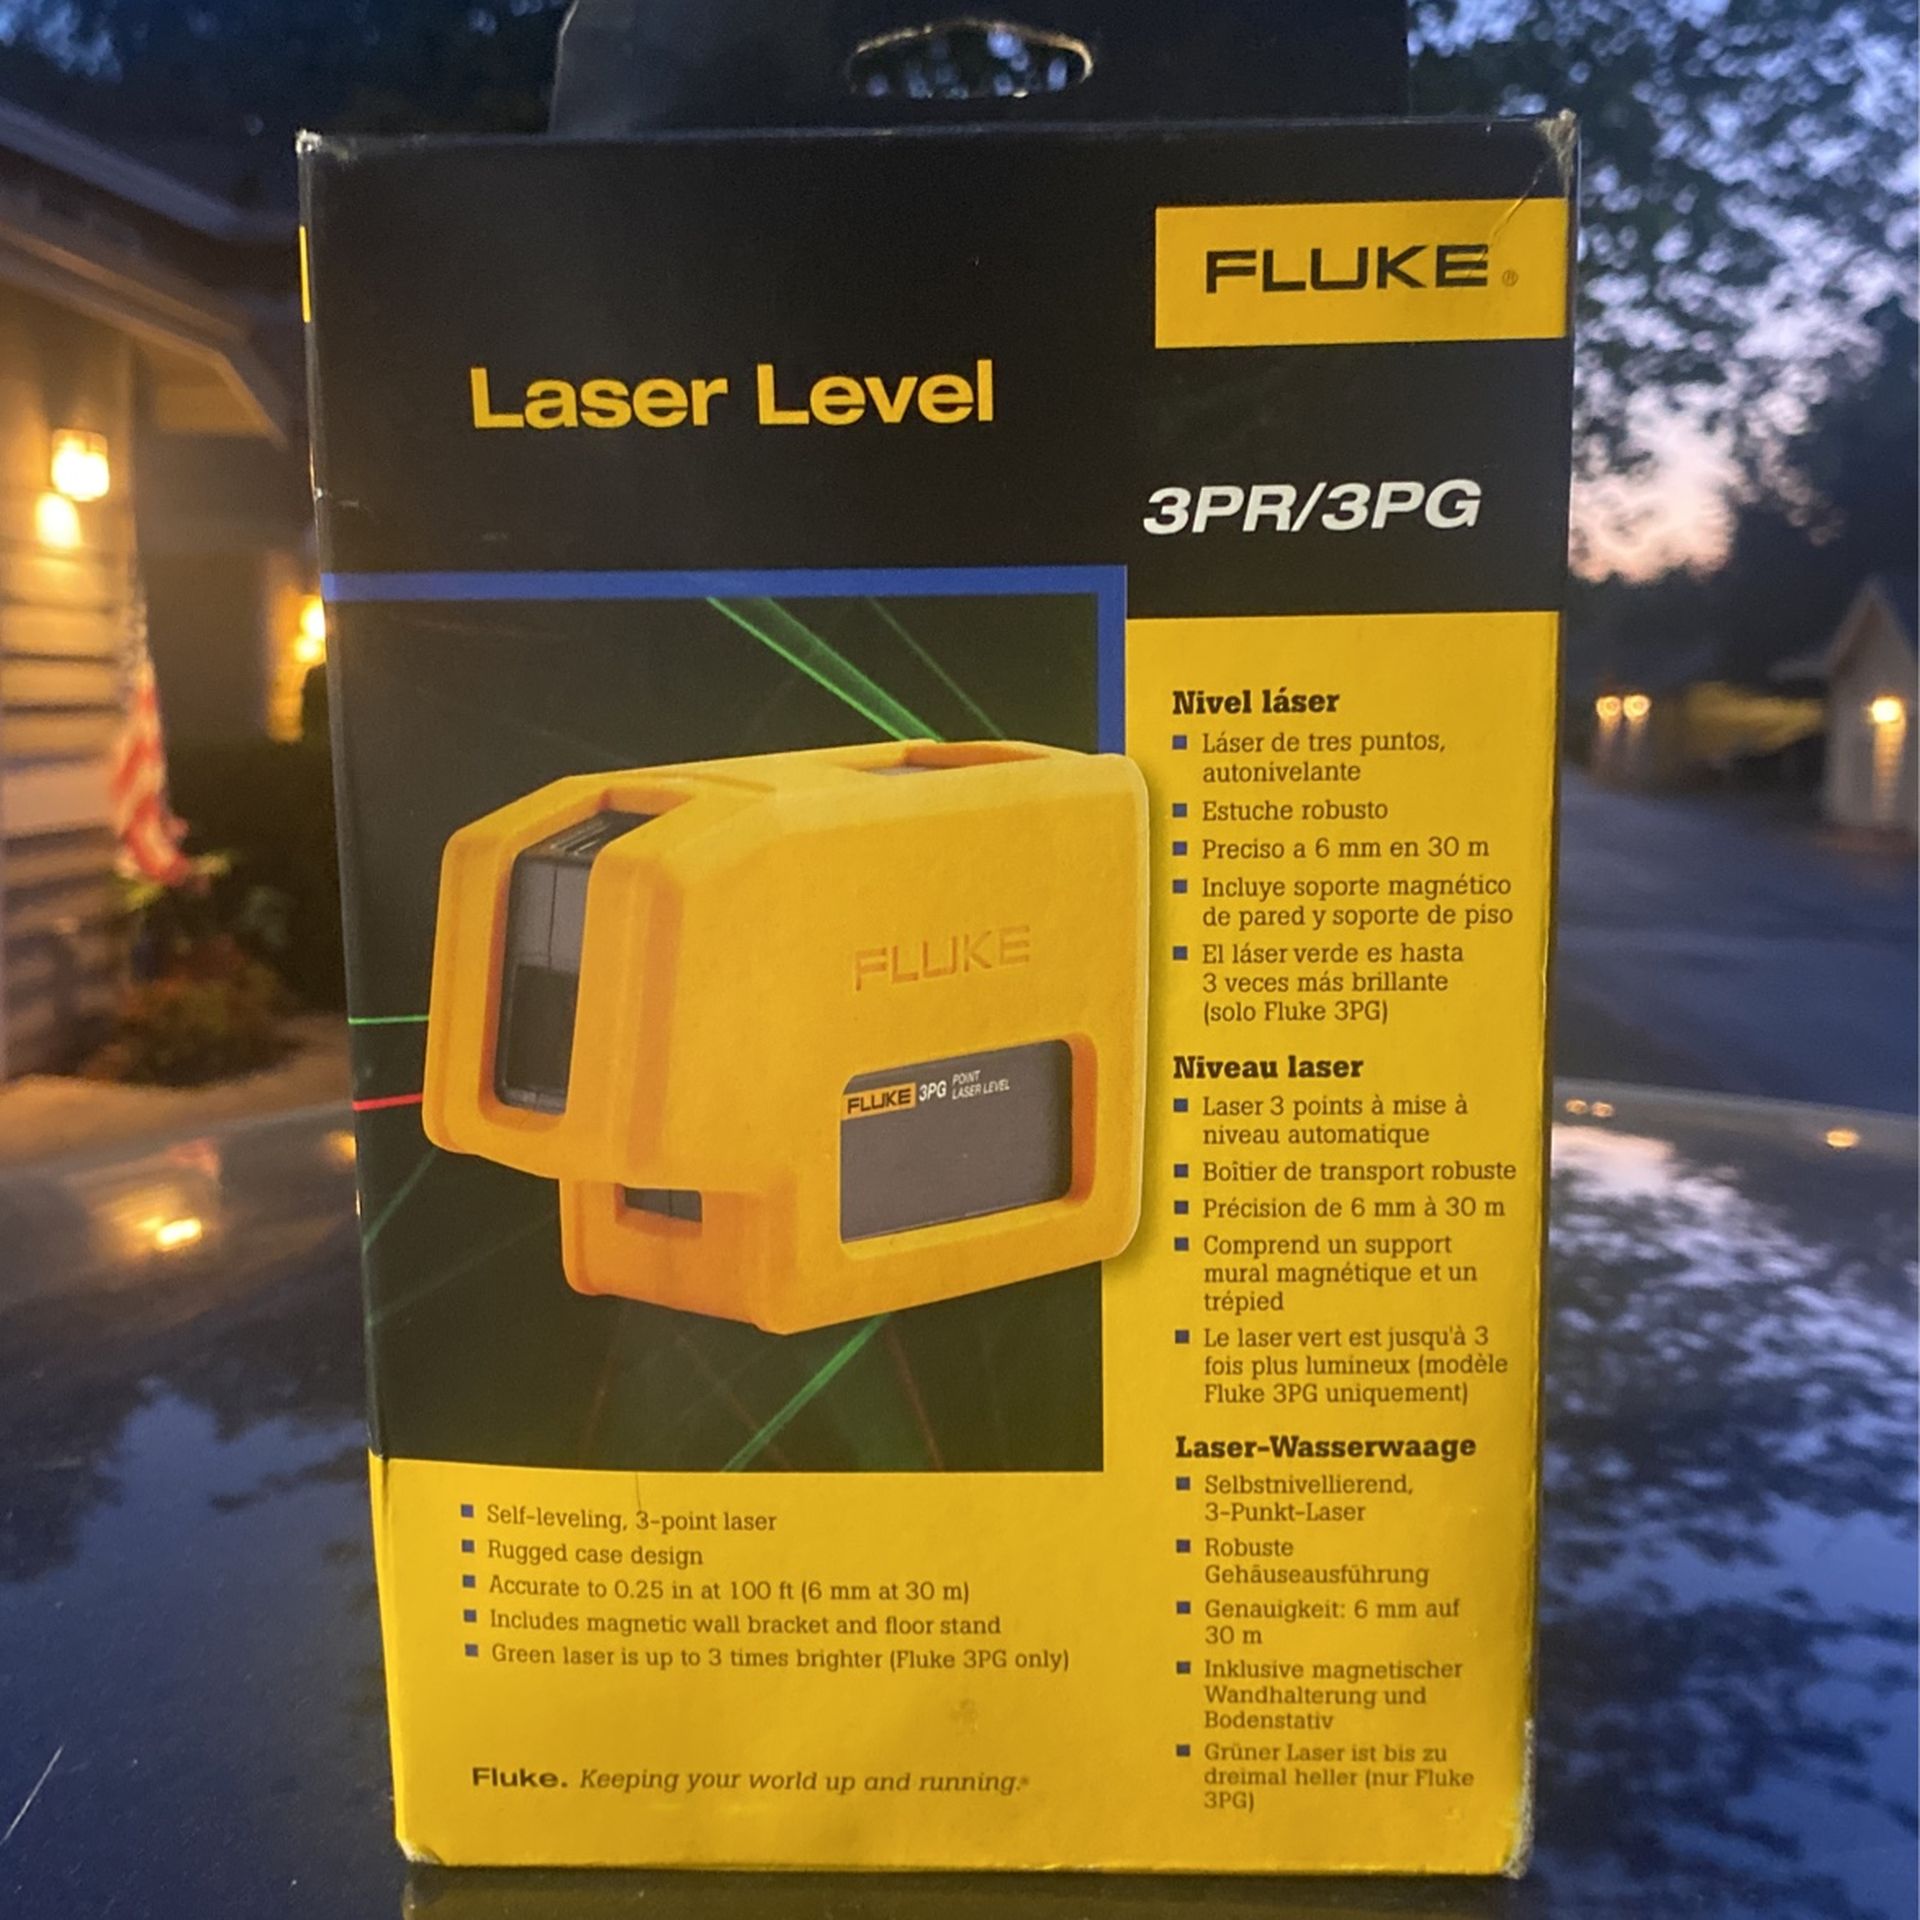 Laser level Fluke 3PR 